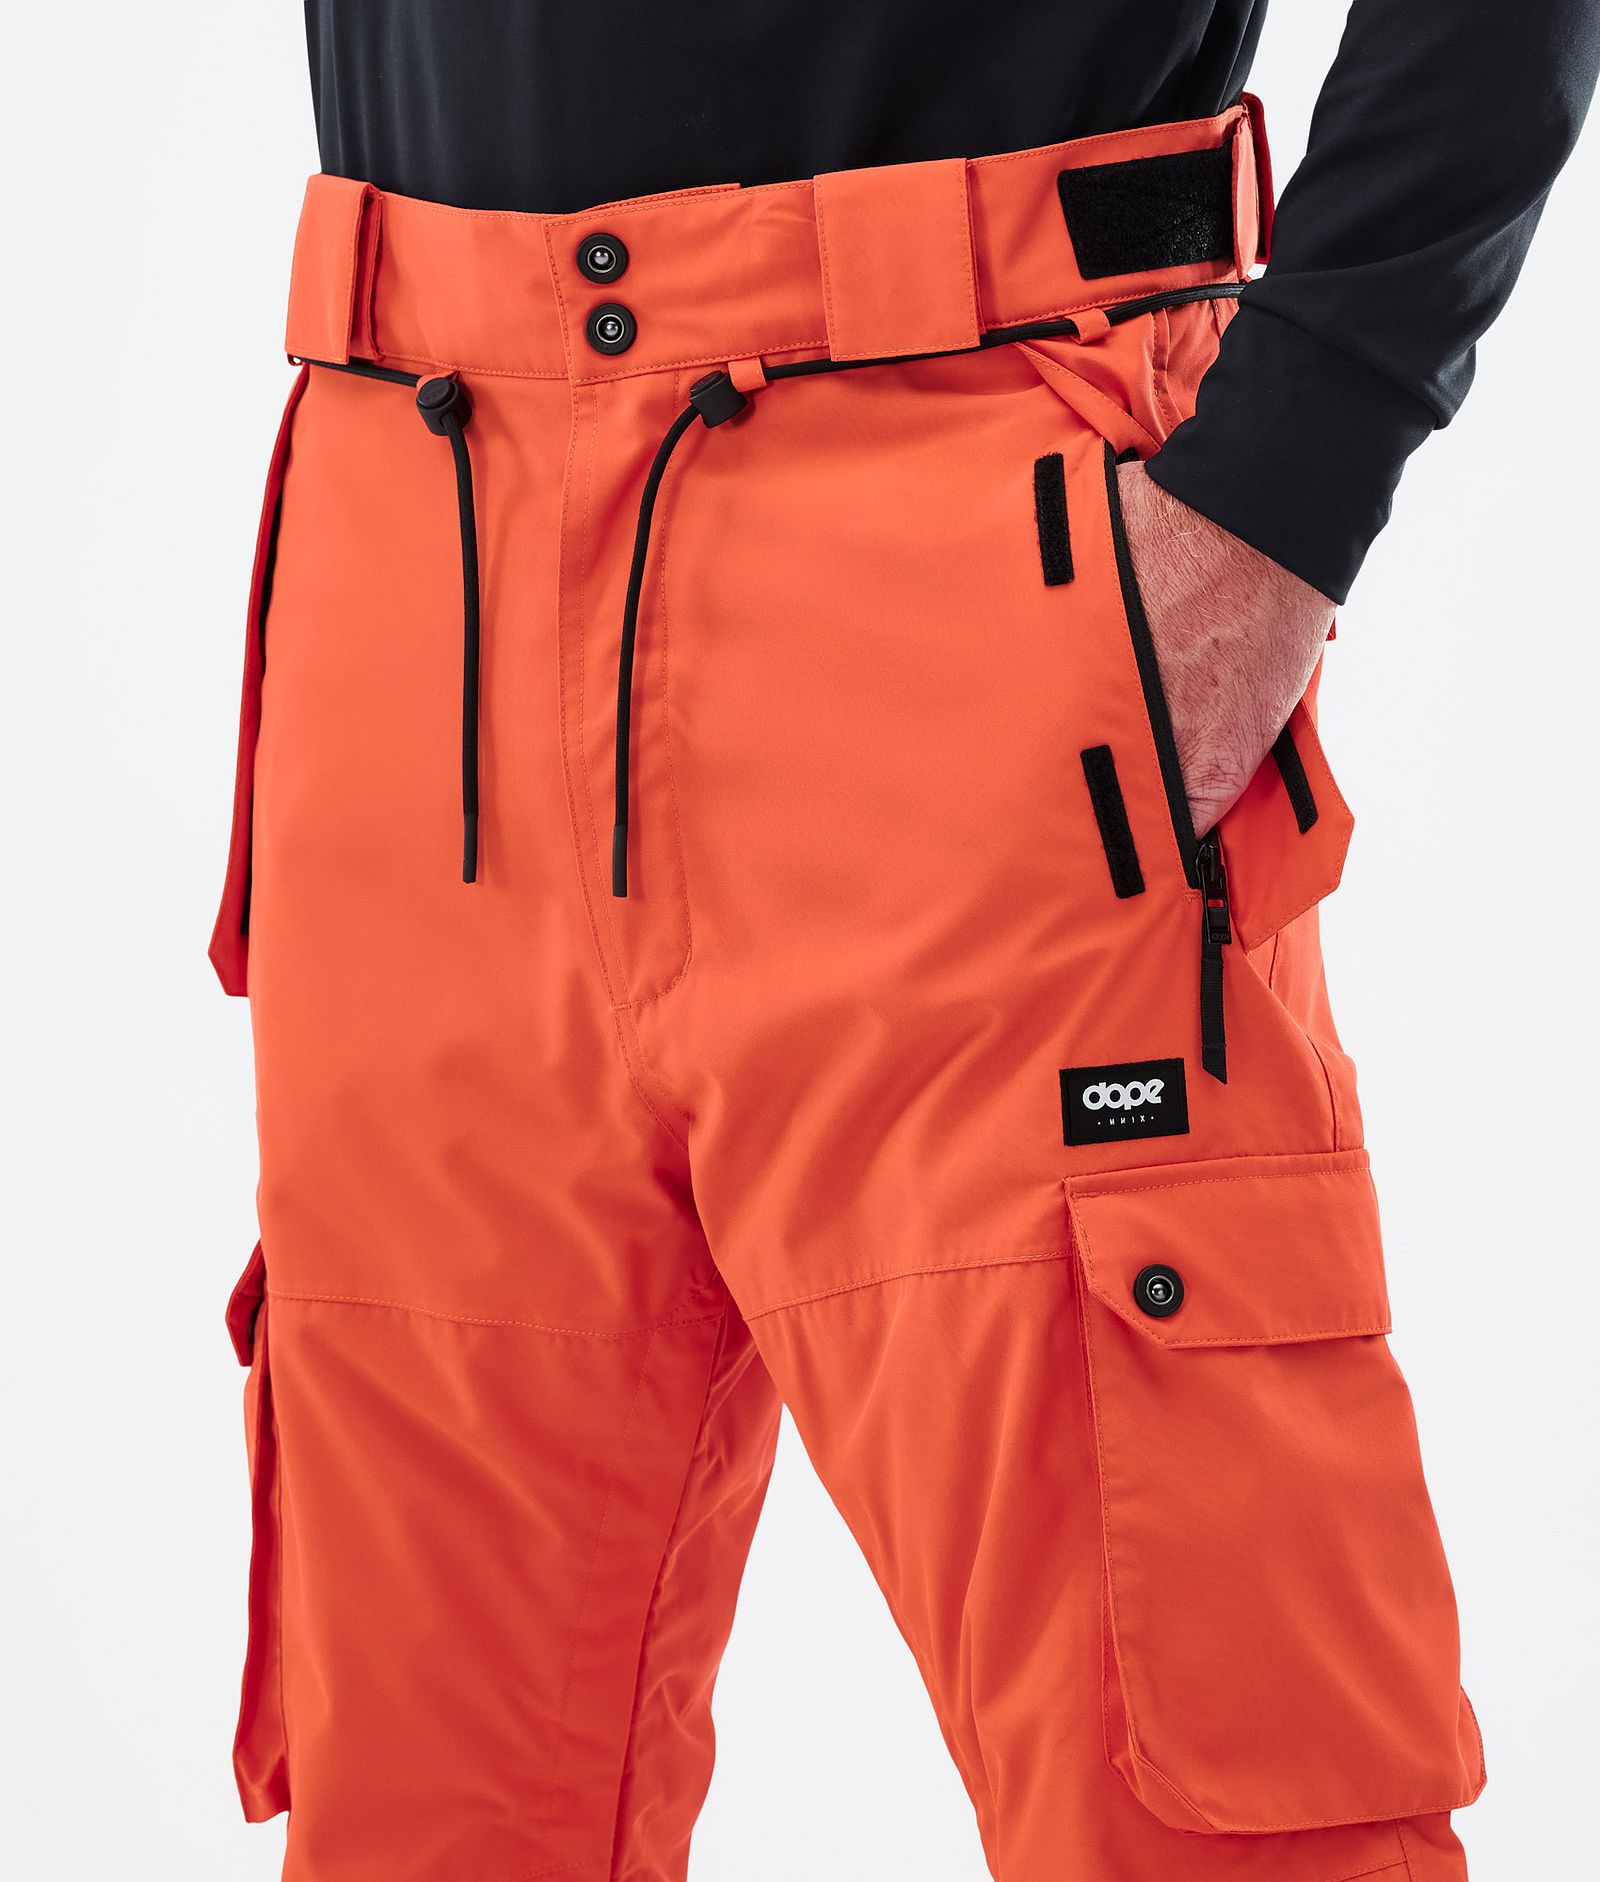 Iconic Kalhoty na Snowboard Pánské Orange Renewed, Obrázek 5 z 7